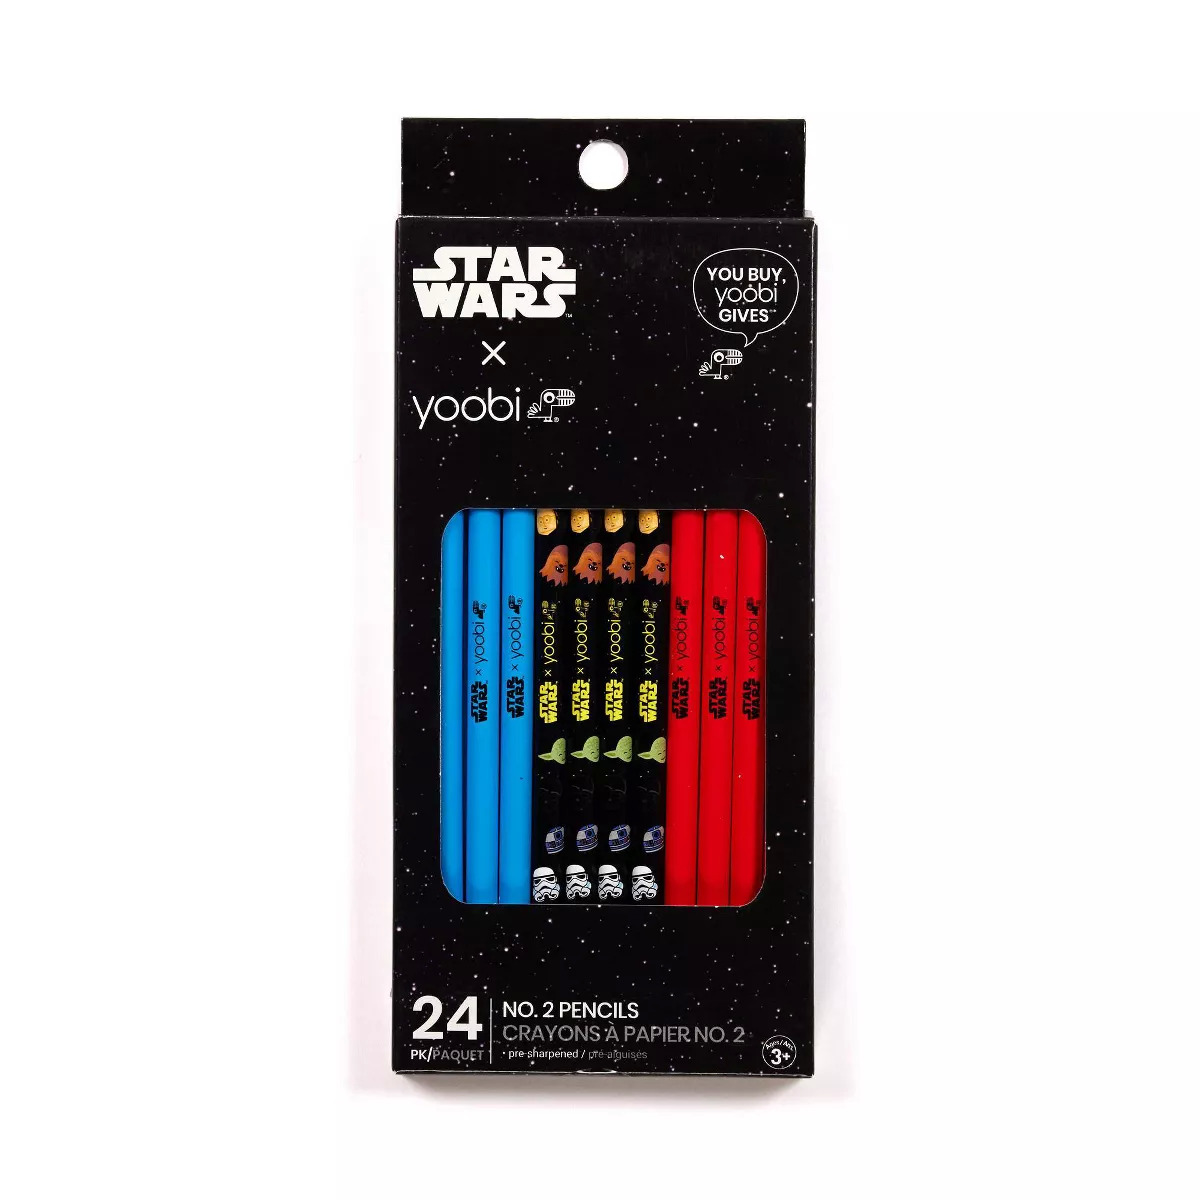 Yoobi - Star Wars: 24-Pack #2 Pencils $2.49, 1" Ring Binder $2.74, More + Free Shipping on $35+